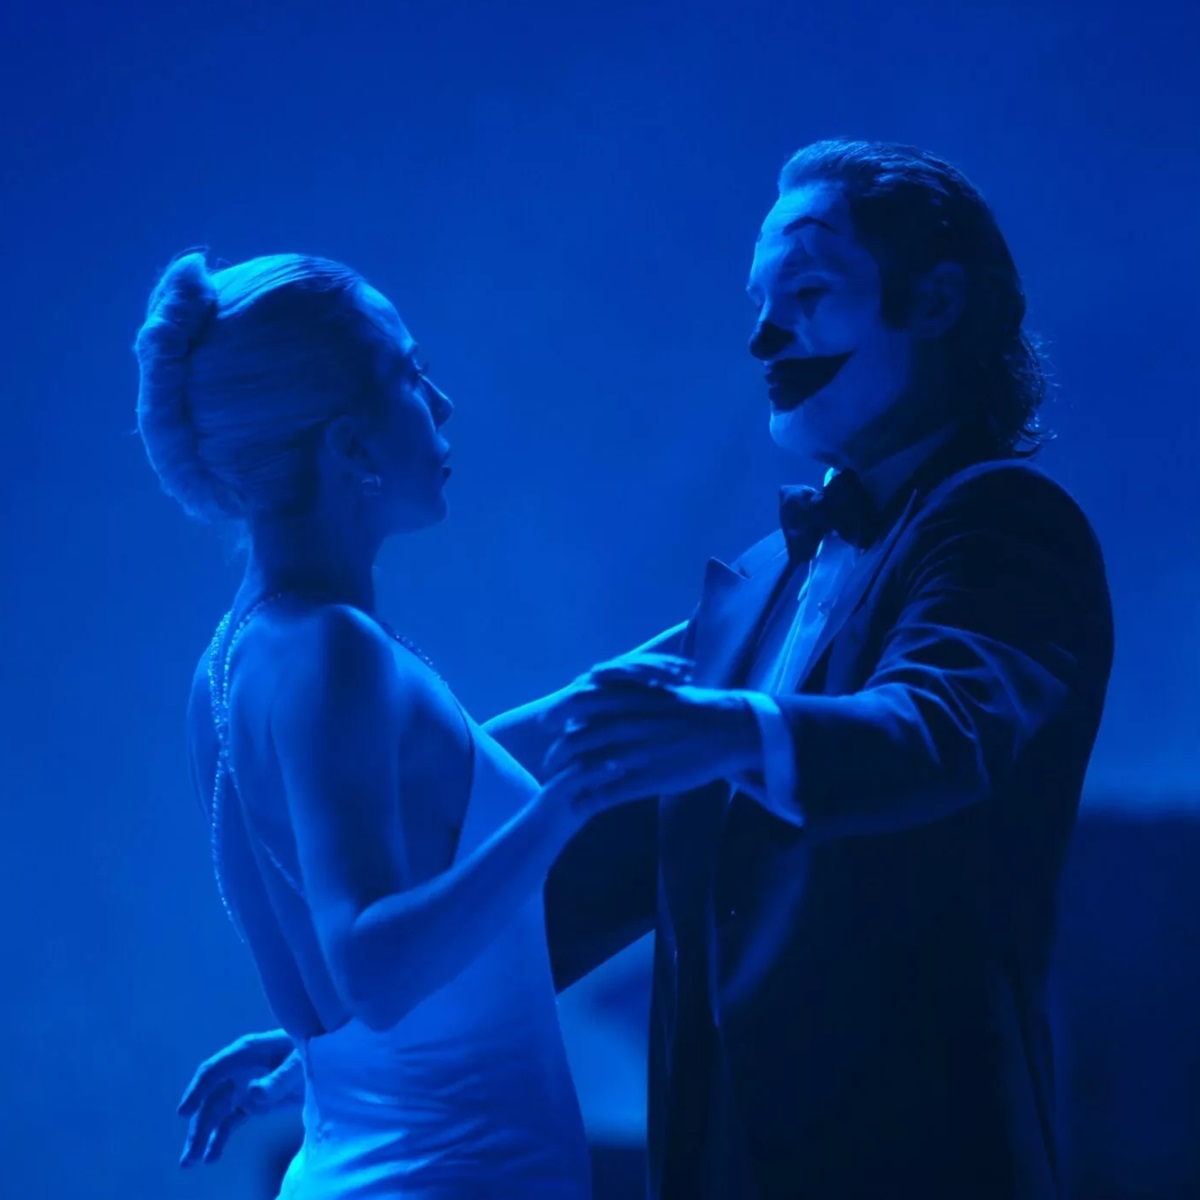 Joker 2  Folie à Deux anticipazioni trama cast trailer ufficiale data lady gaga 